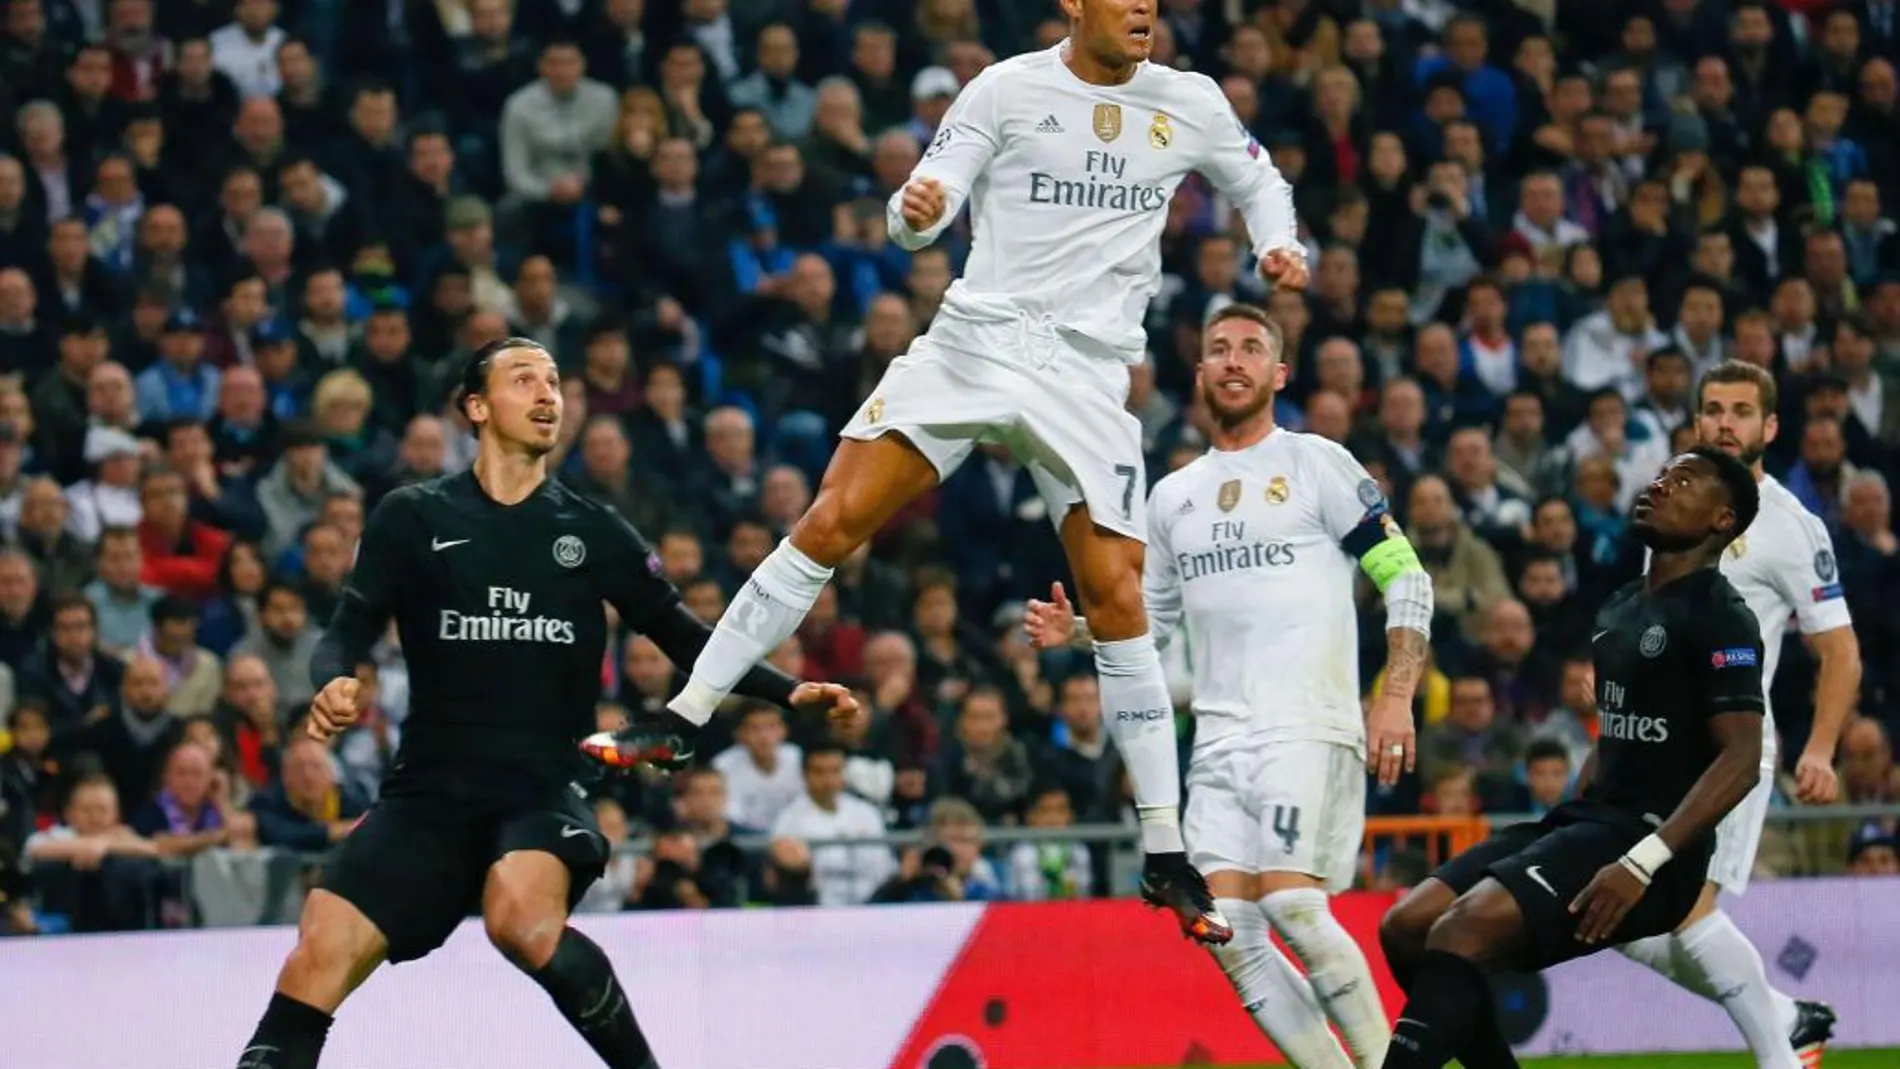 El delantero portugués del Real Madrid Cristiano Ronaldo (c) cabecea el balón ante su compañero, Sergio Ramos (2d), y los jugadores del Paris Saint-Germain, el sueco Zlatan Ibrahimovic (i) y Serge Aurier (d)